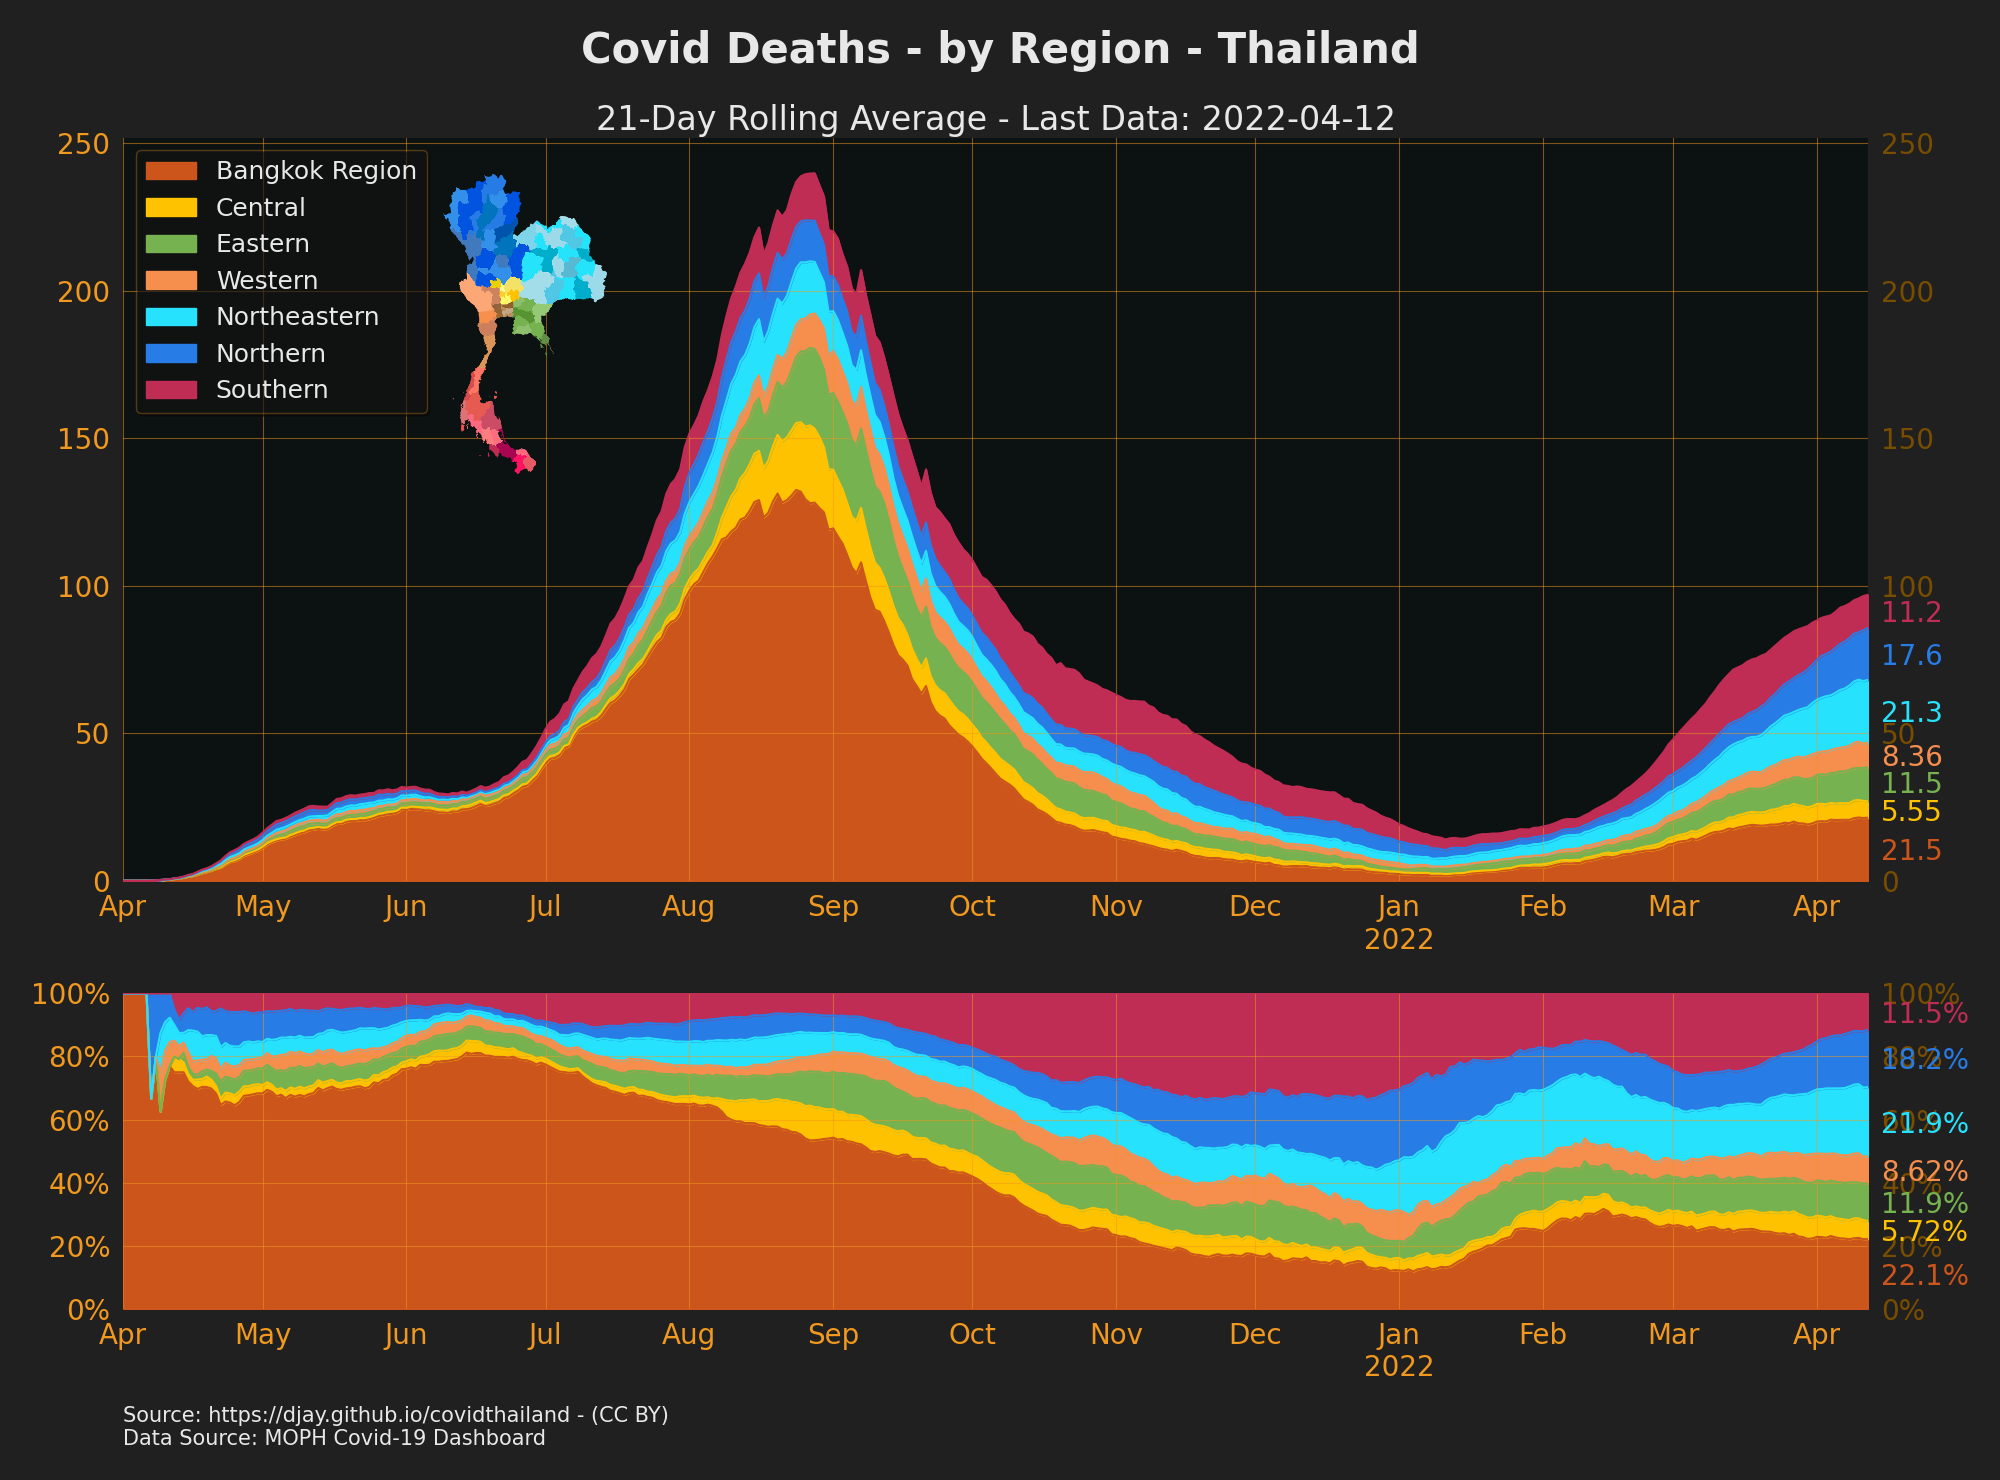 Thailand Covid Deaths by Region